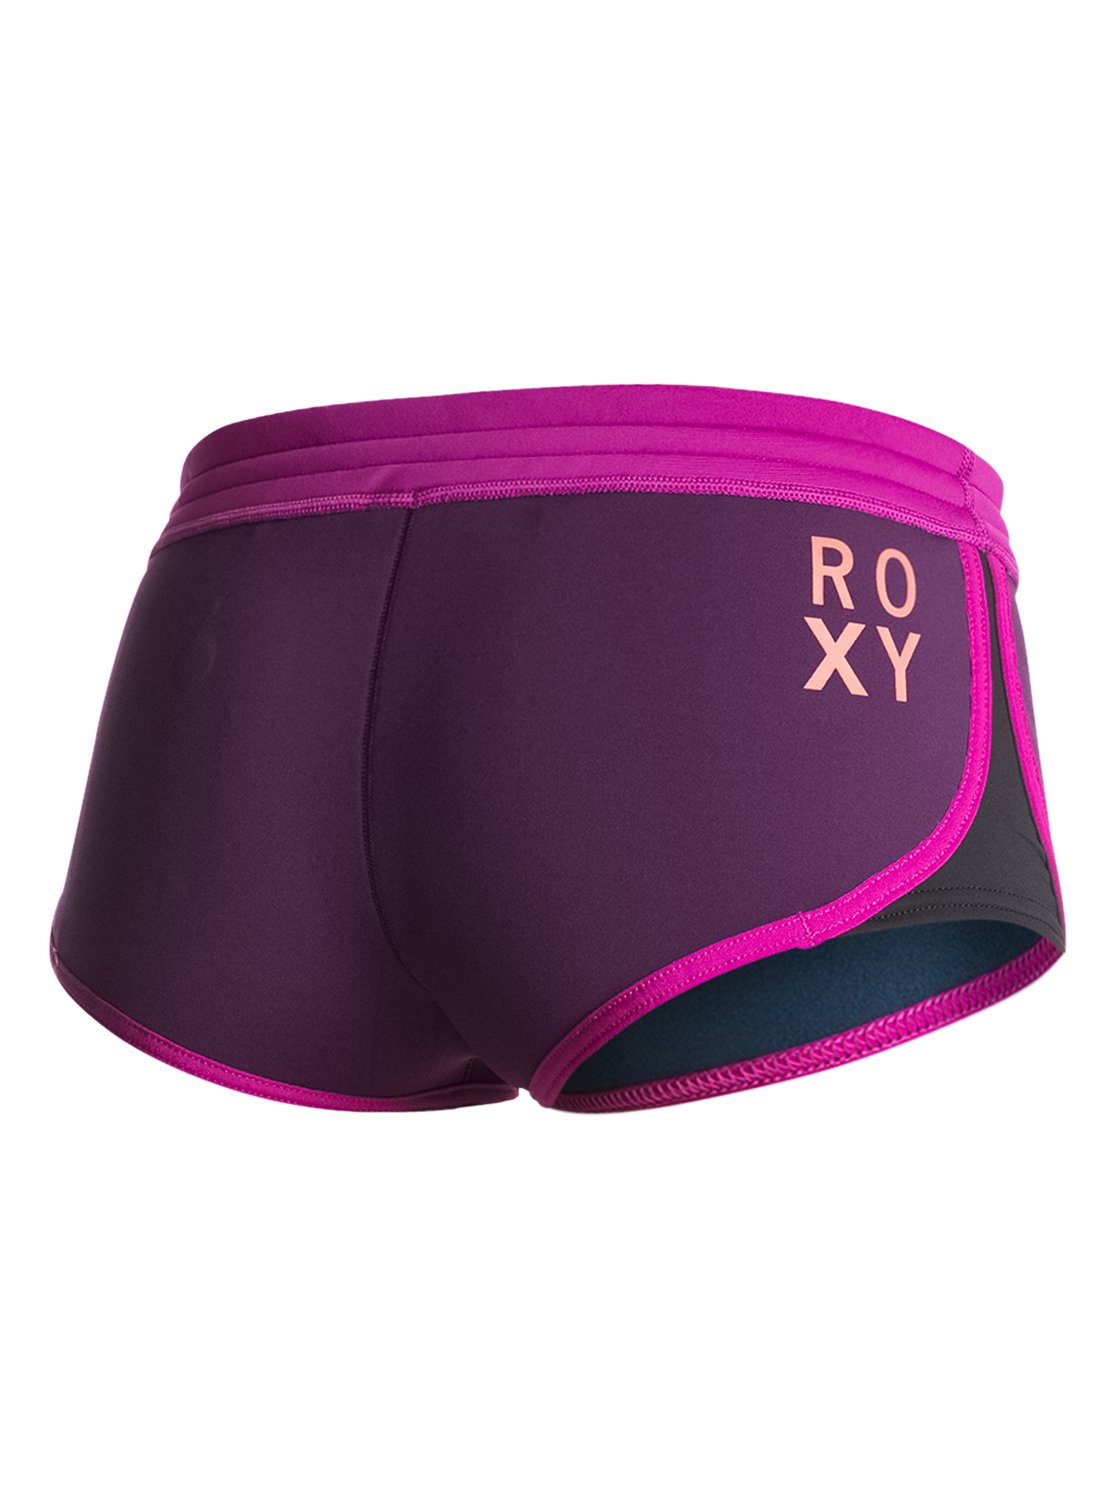 XY 1mm Neo Shorts 888701075455 | Roxy